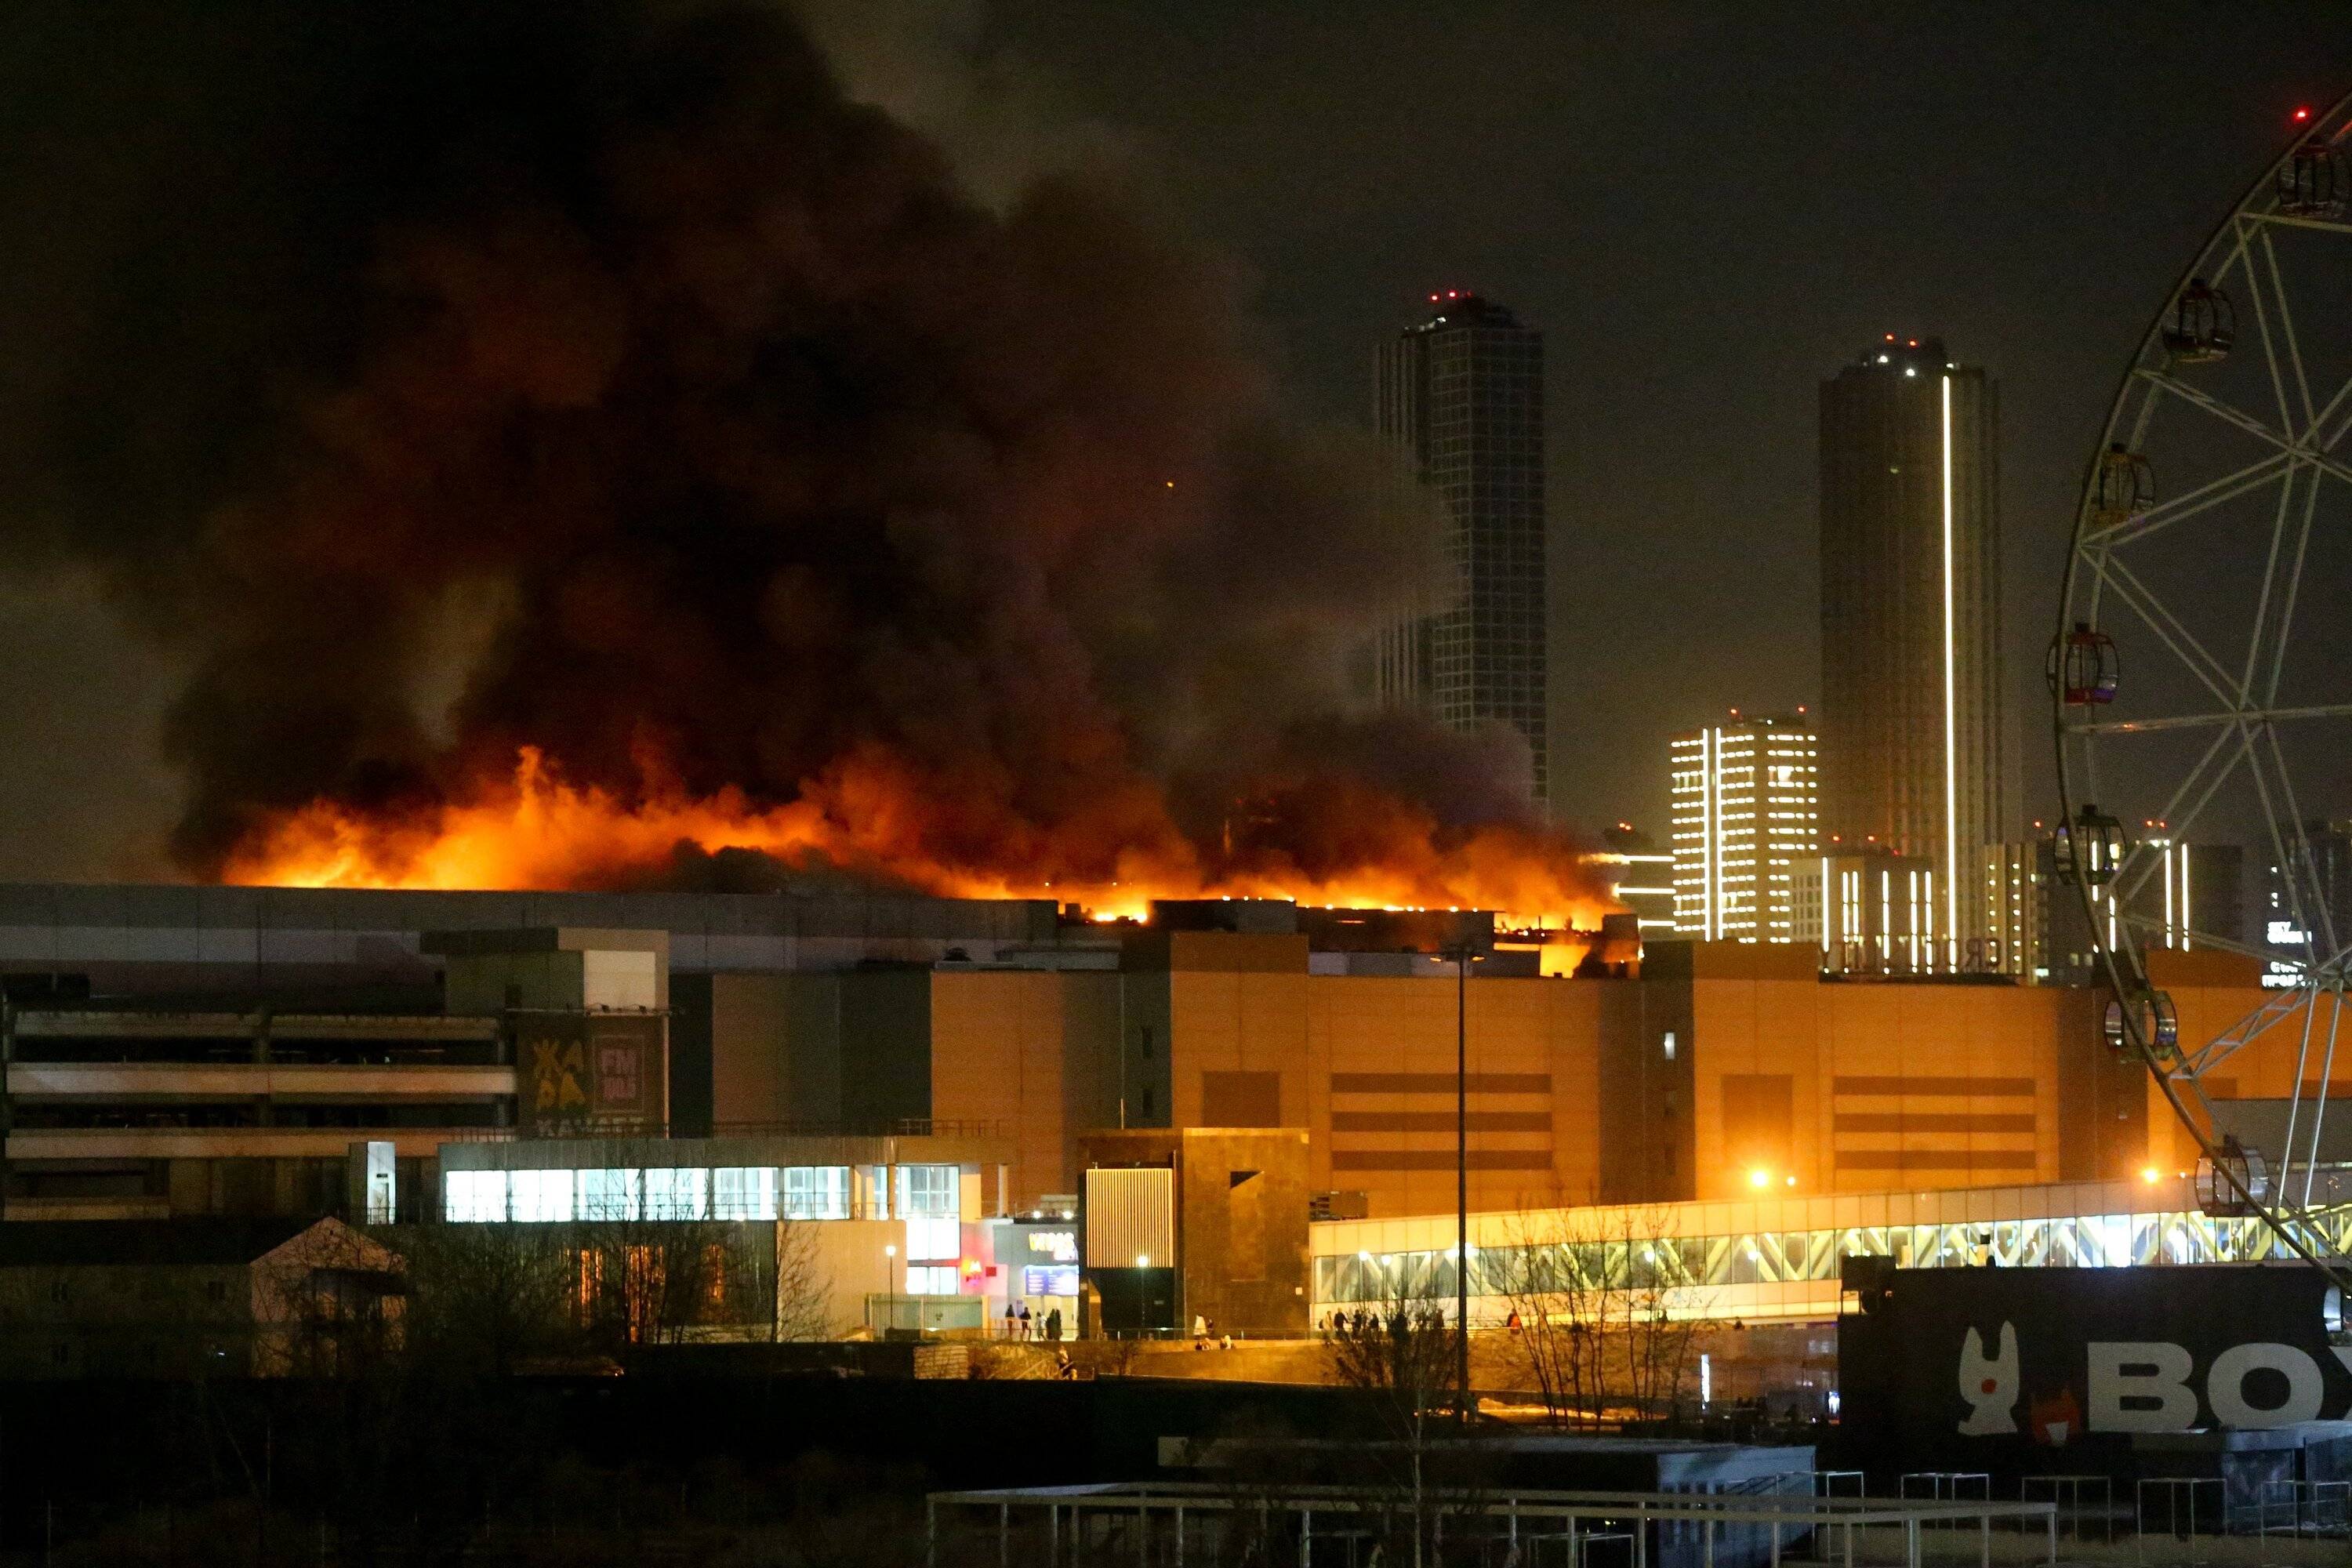 Płonące centrum handlowe, płomienie i dym widać nad dachem, rozświetlają noc